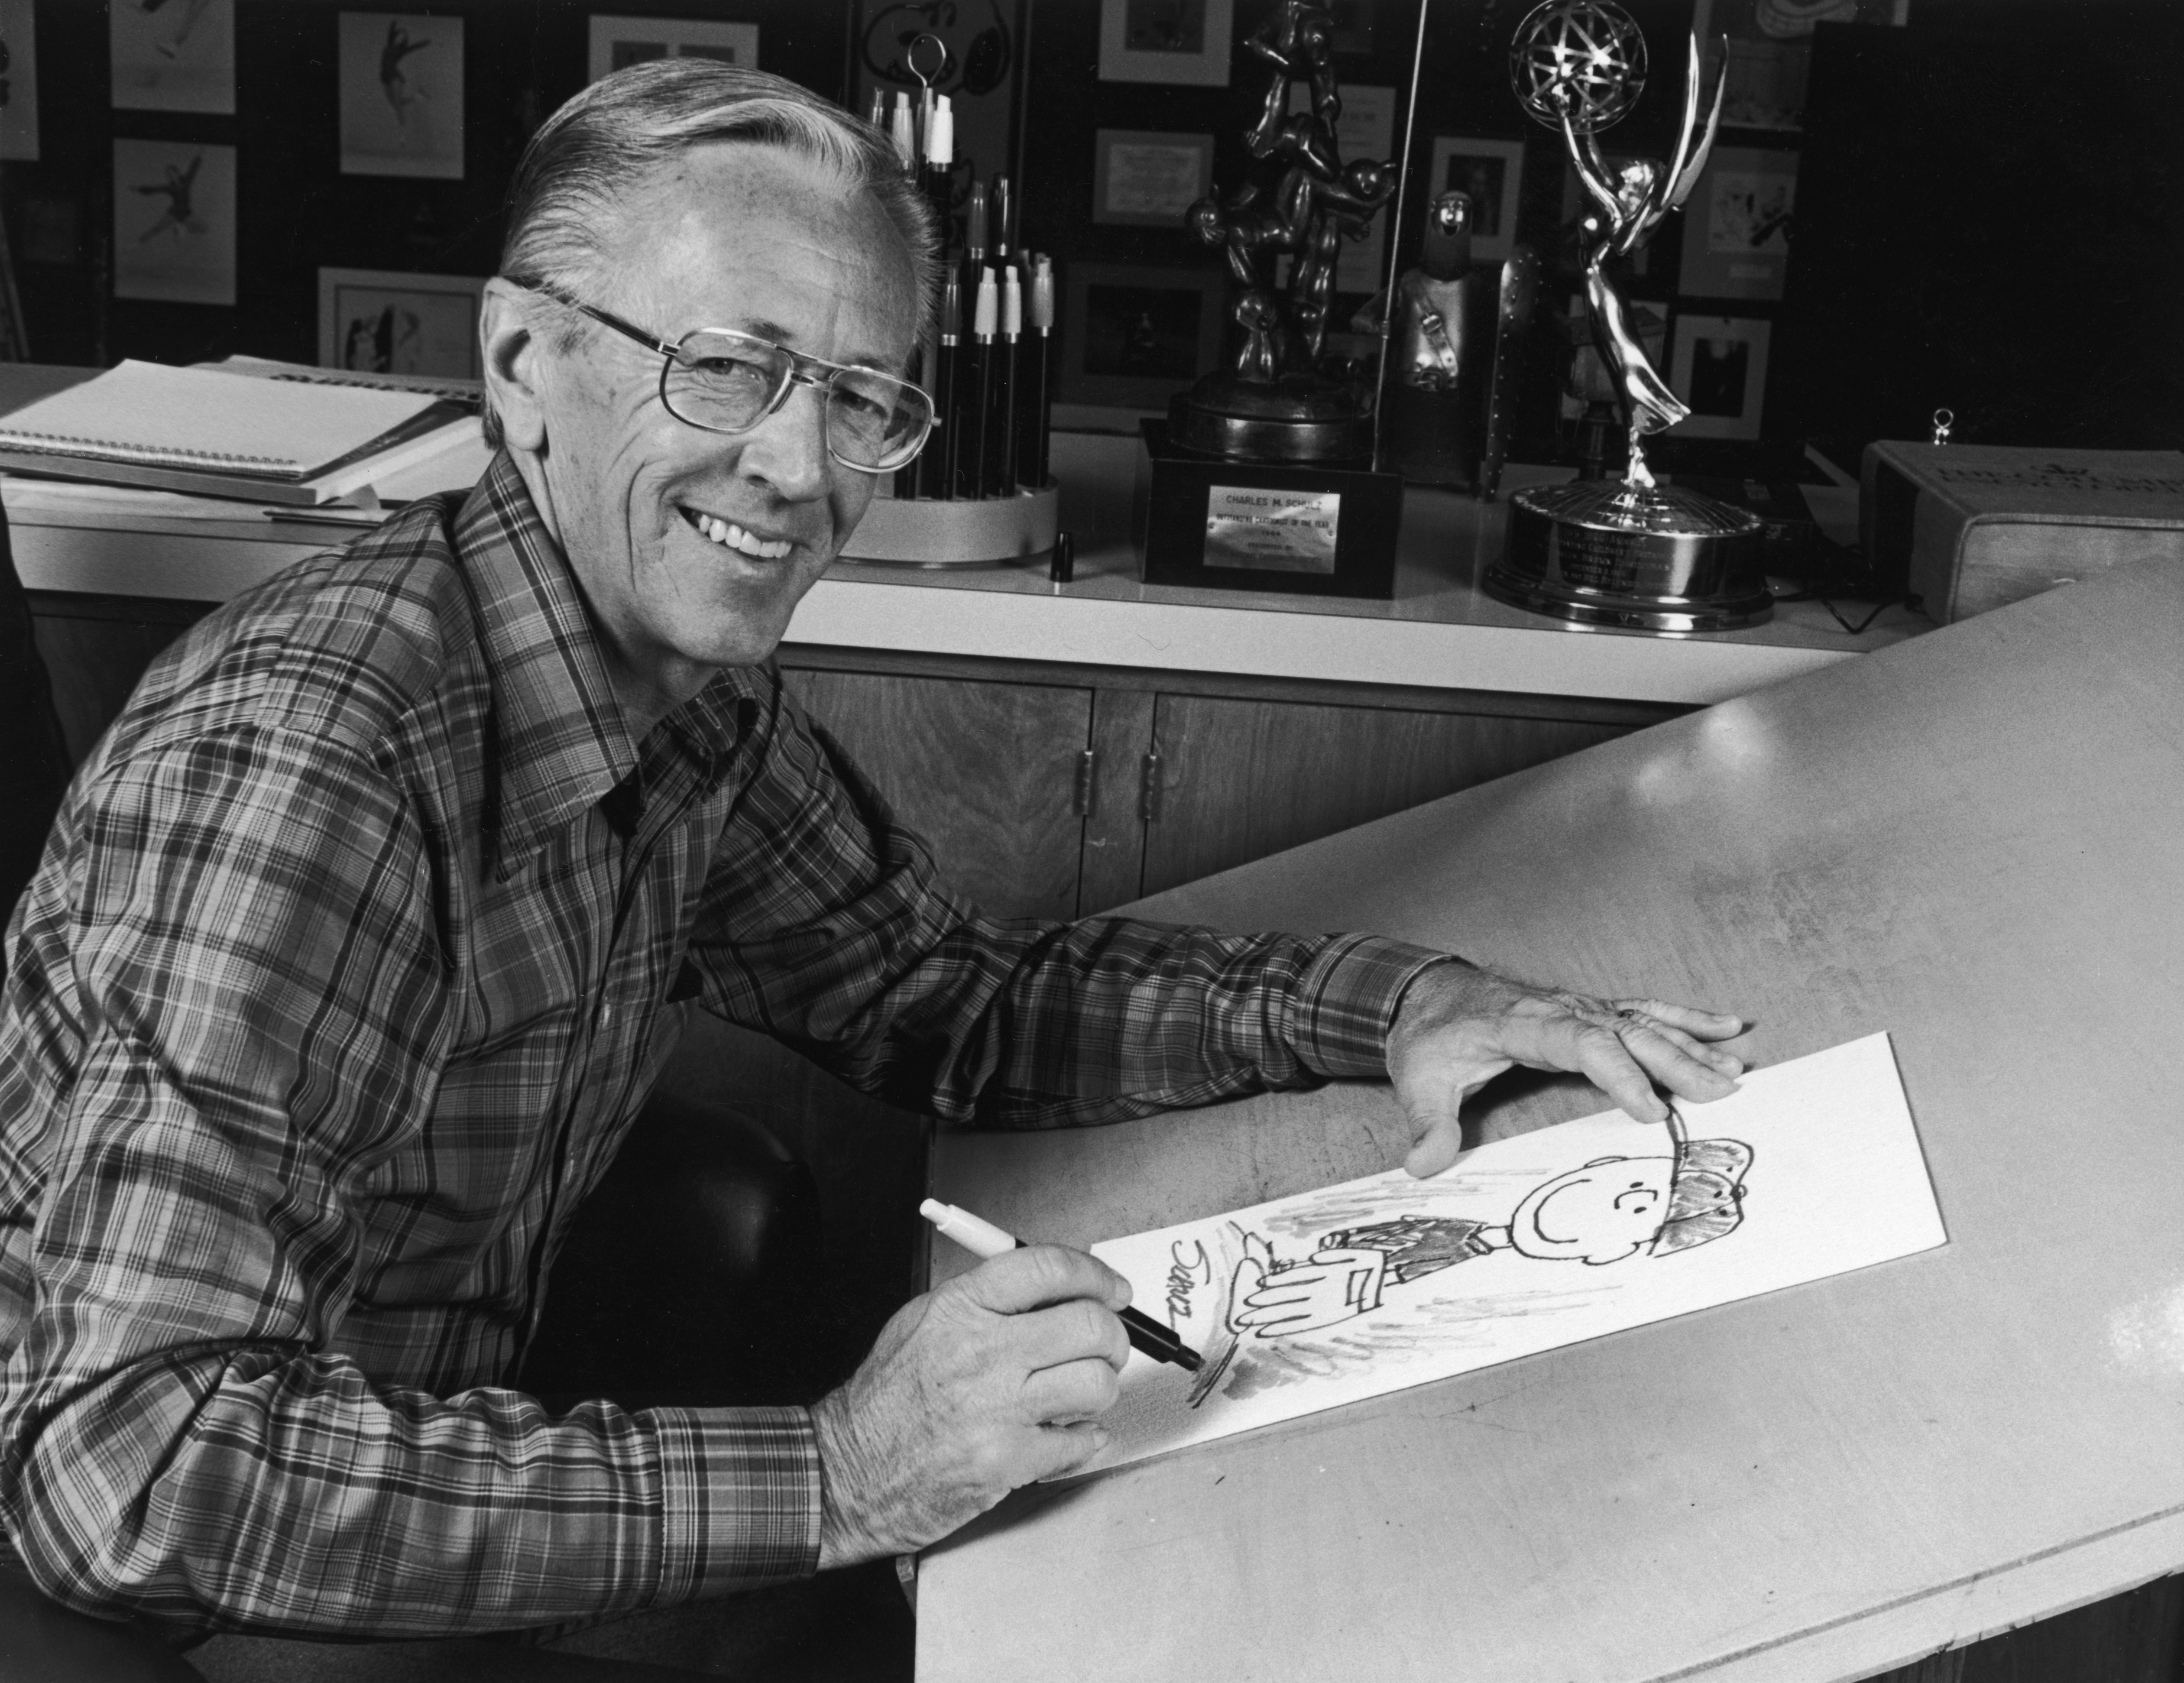 1978: Retrato del dibujante estadounidense Charles M Schulz (1922 - 2001), creador de la tira cómica "Peanuts", sentado en la mesa de dibujo de su estudio con una imagen de su personaje Charlie Brown y algunos premios detrás de él. Schulz creó la tira cómica en 1950 (Getty Images).